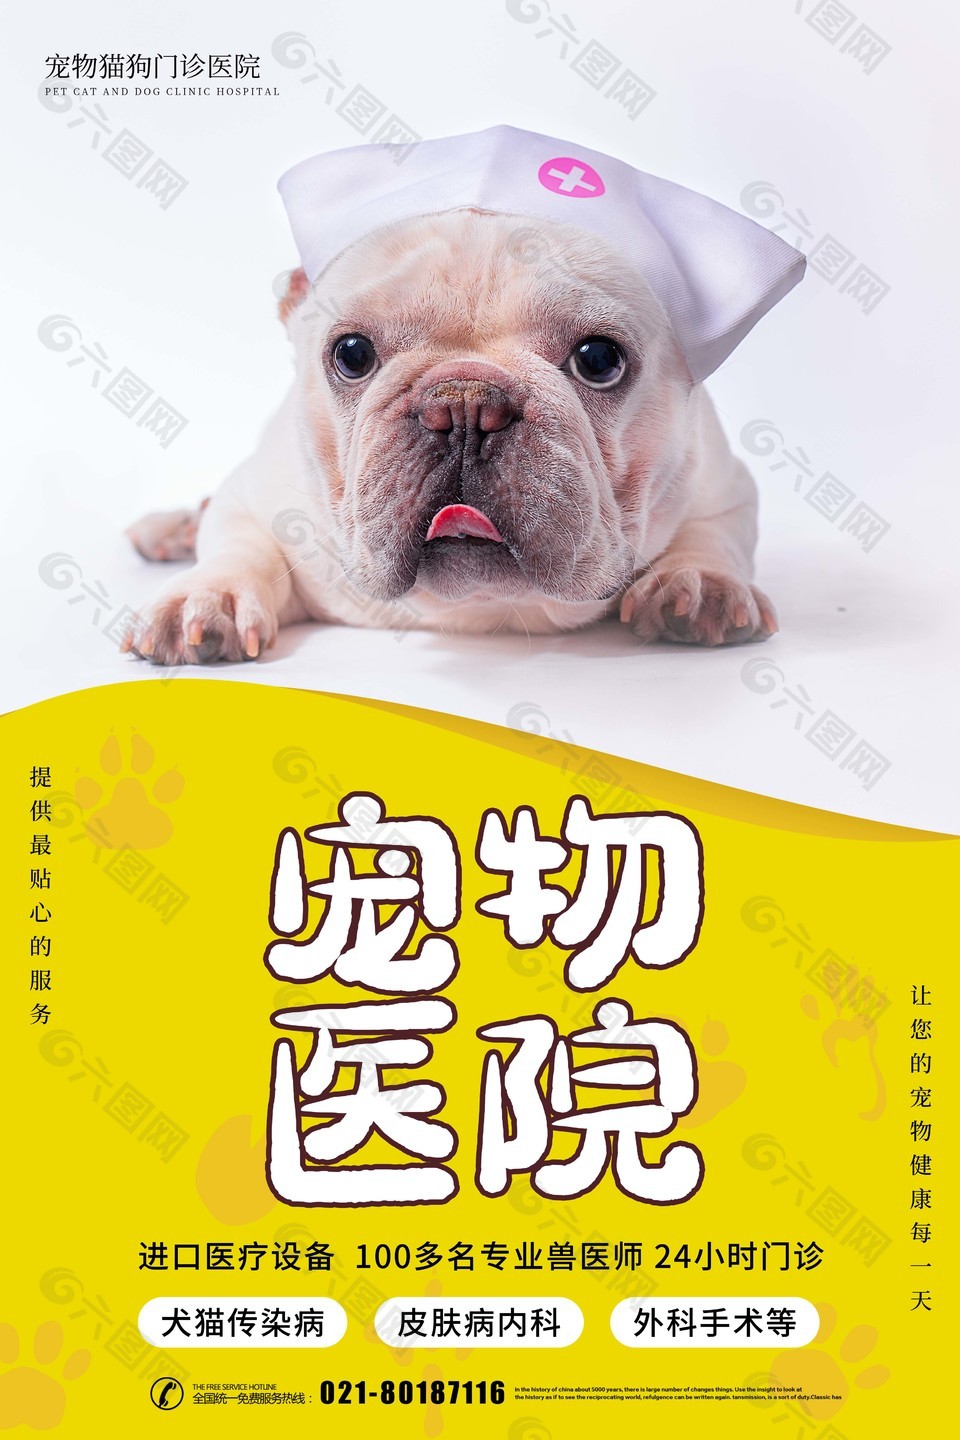 宠物猫狗门诊医院宣传海报设计素材